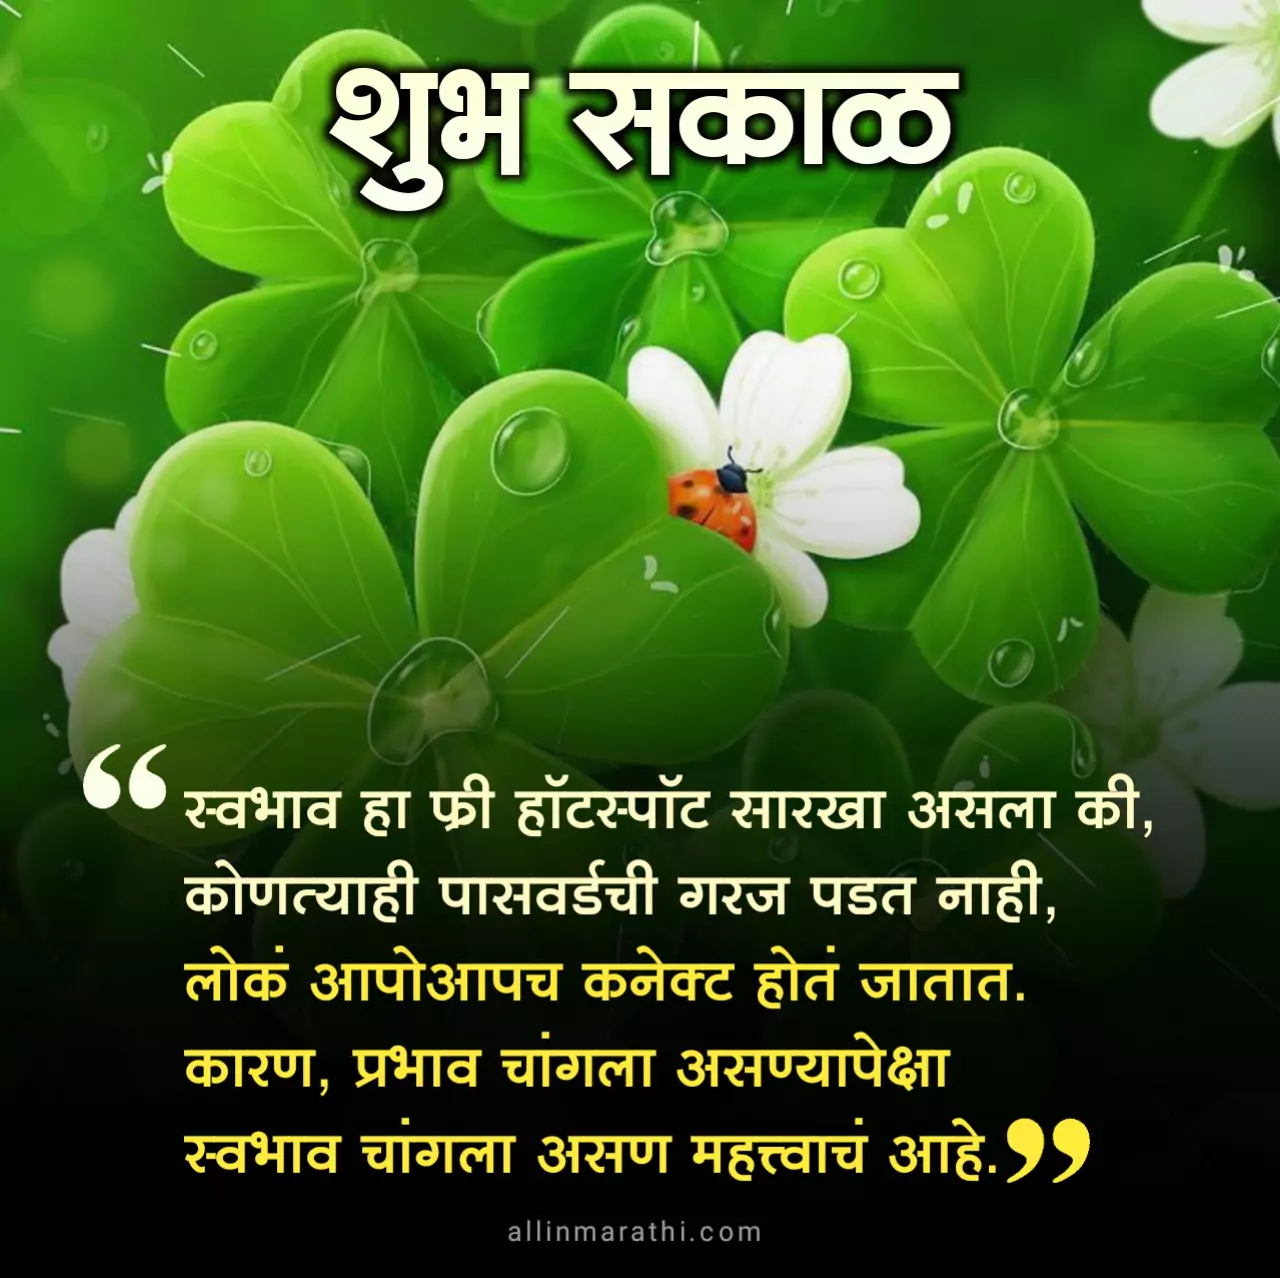 Good morning message marathi